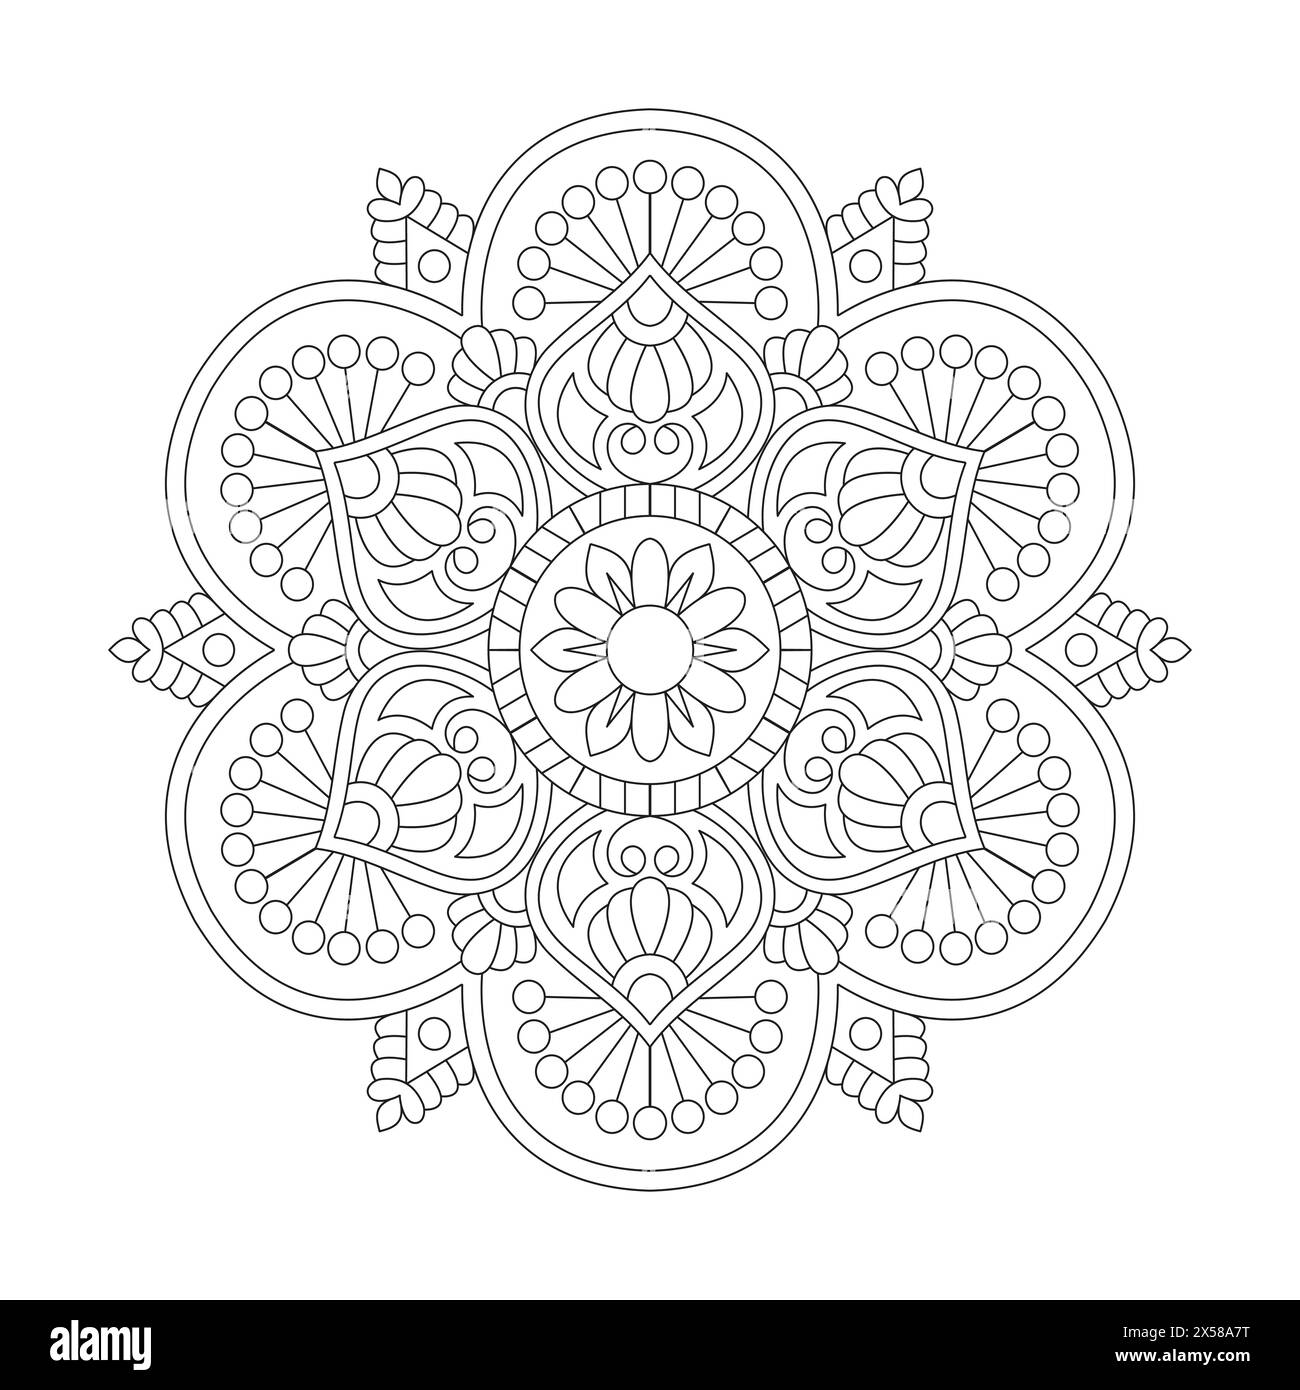 Pagina dei libri coloranti Mandala di Cosmic Carousel per interno libro KDP. Petali tranquilli, capacità di rilassarsi, esperienze cerebrali, Haven armonioso, POR pacifico Illustrazione Vettoriale